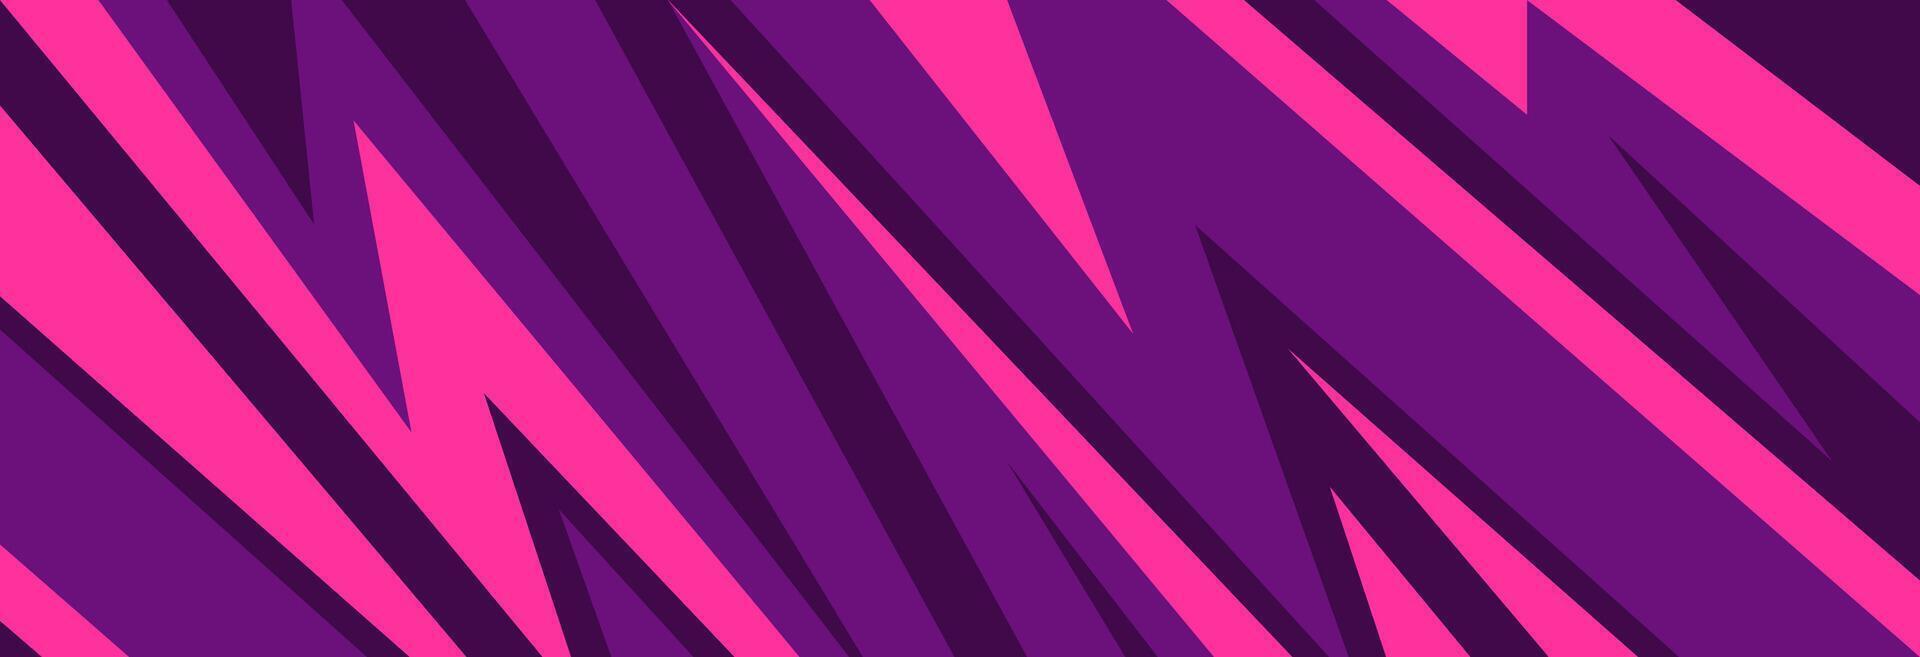 modern abstrakt sporter bakgrund med rosa och lila taggiga geometrisk former vektor